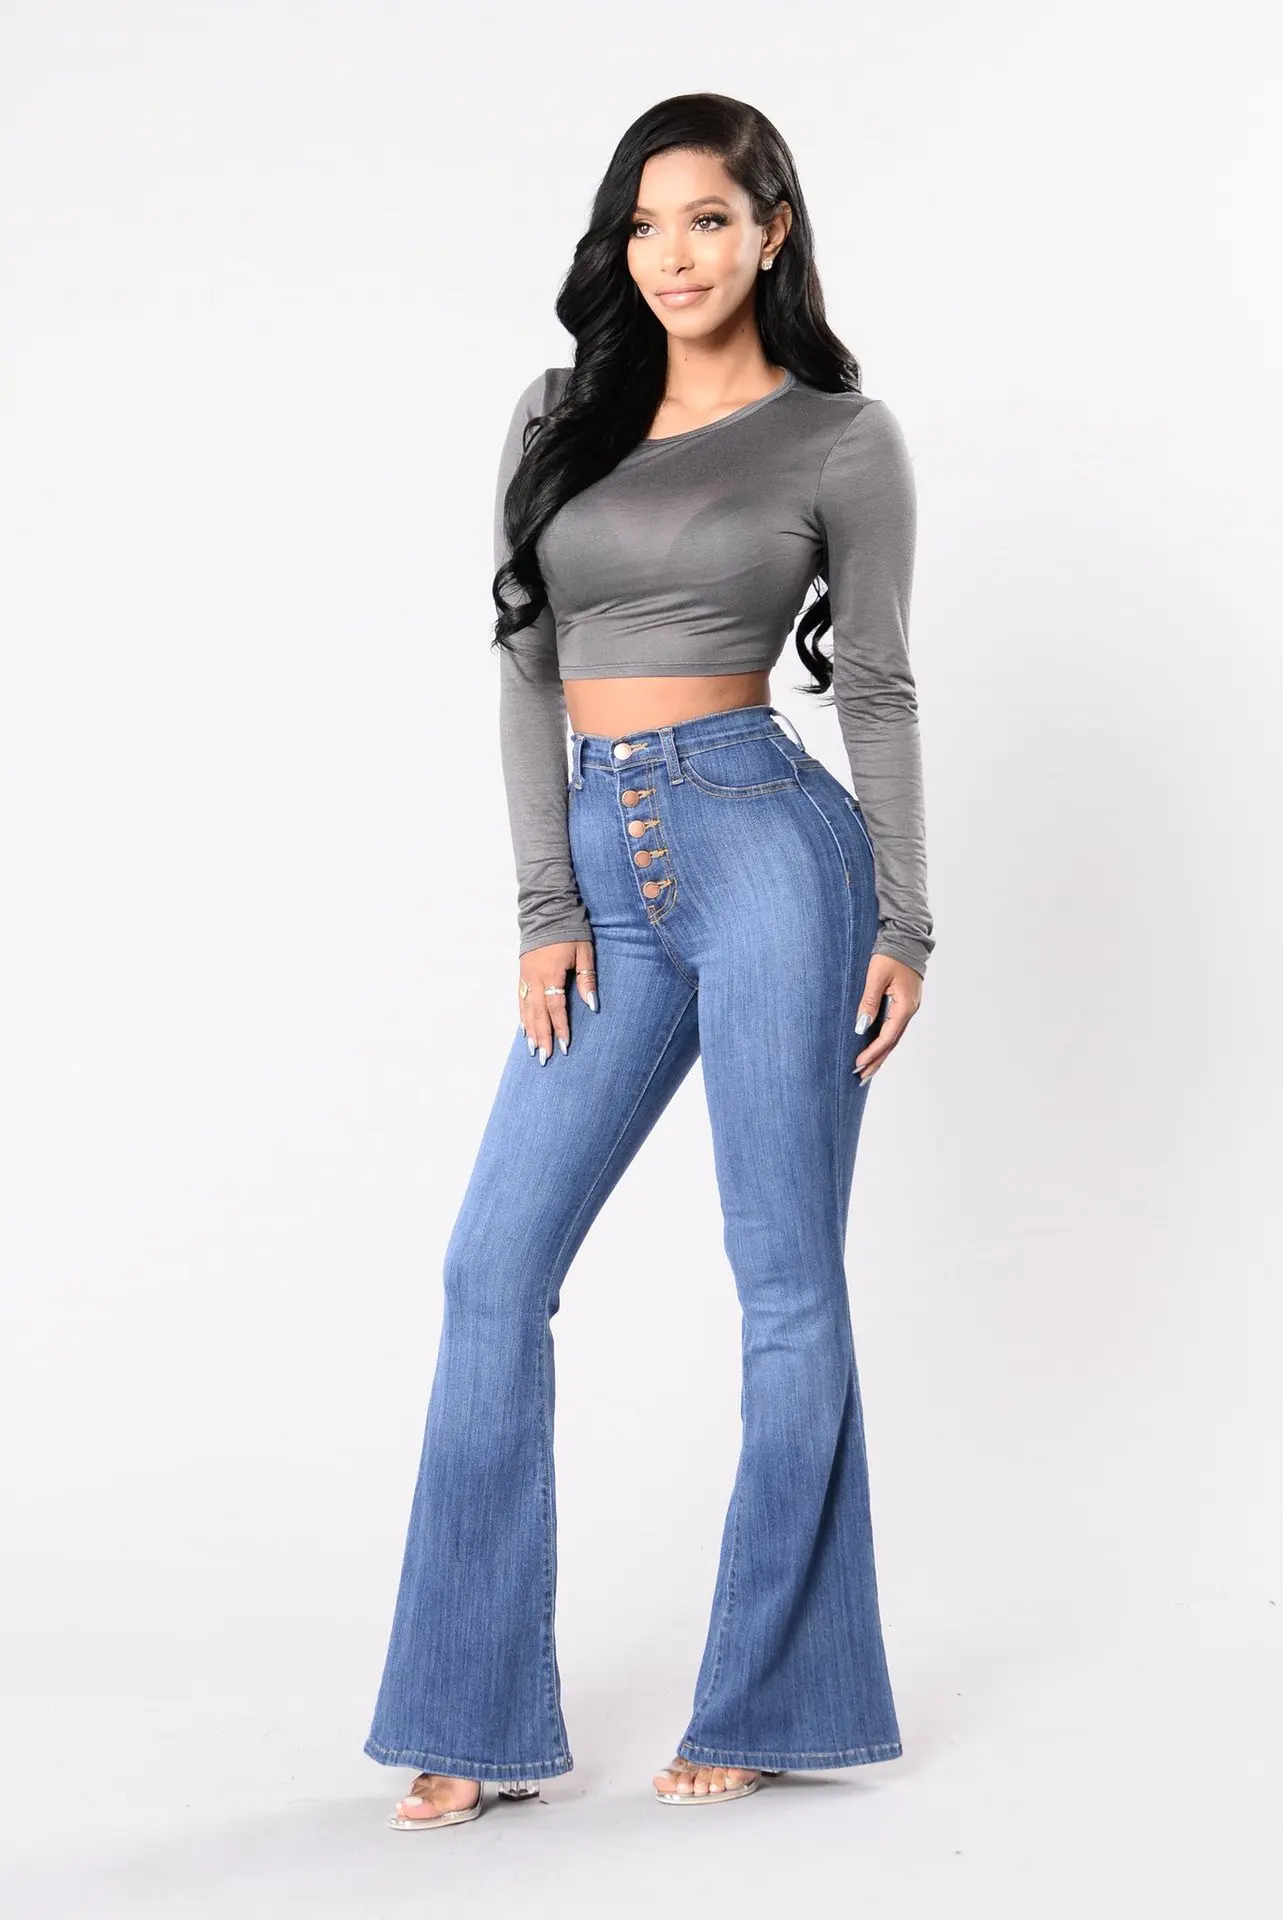 Синие расклешенные обтягивающие джинсы женские с высокой талией пуговицы Плюс Размер Брюки Полная длина прикладочные повседневные модные джинсы